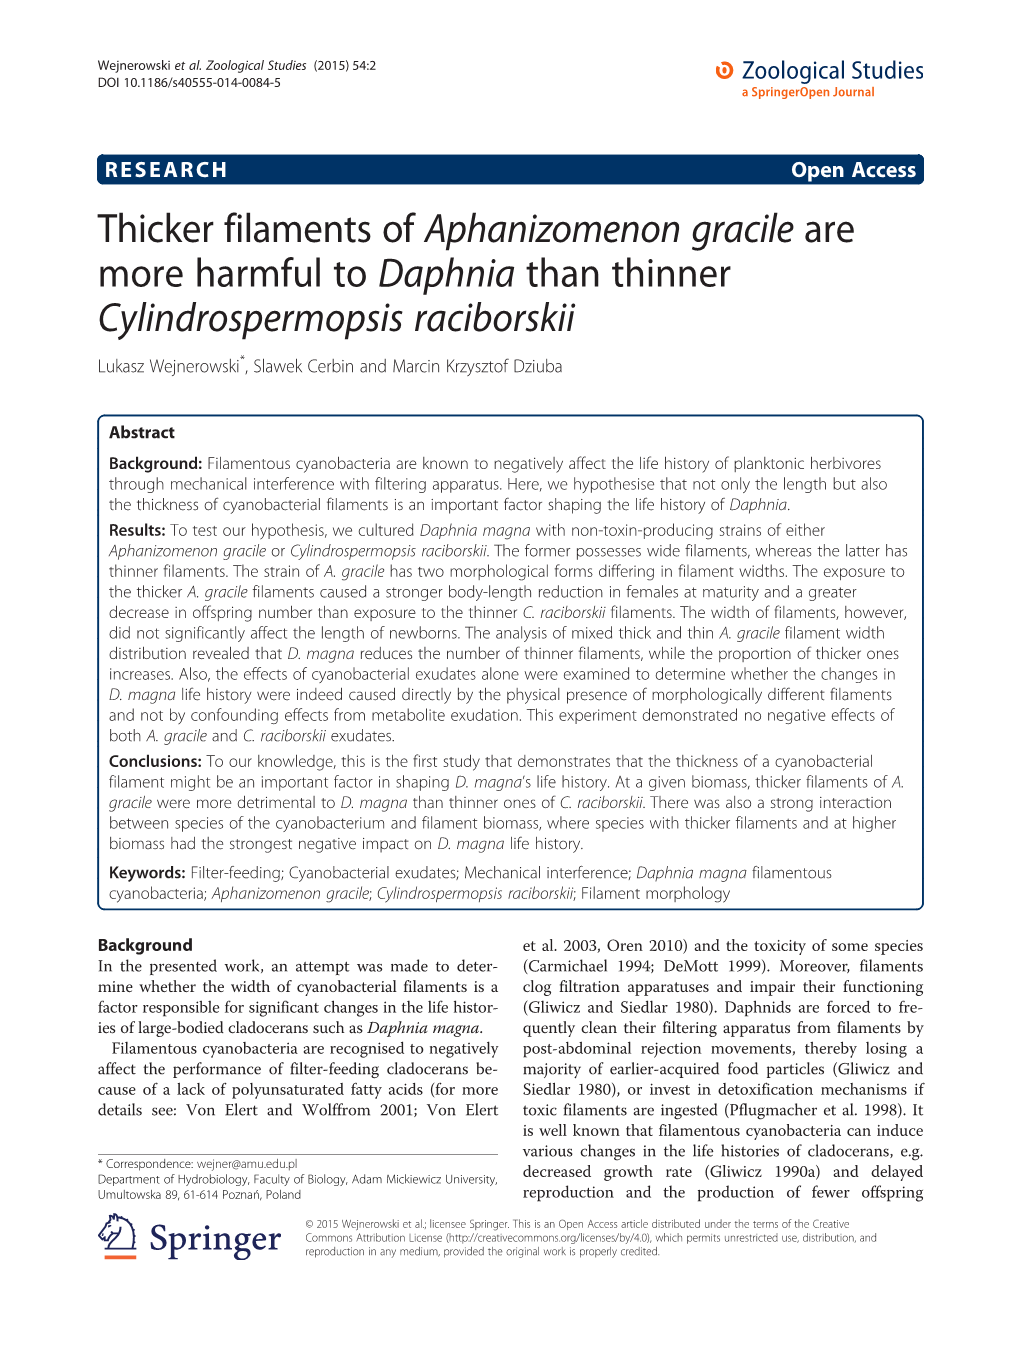 Thicker Filaments of Aphanizomenon Gracile Are